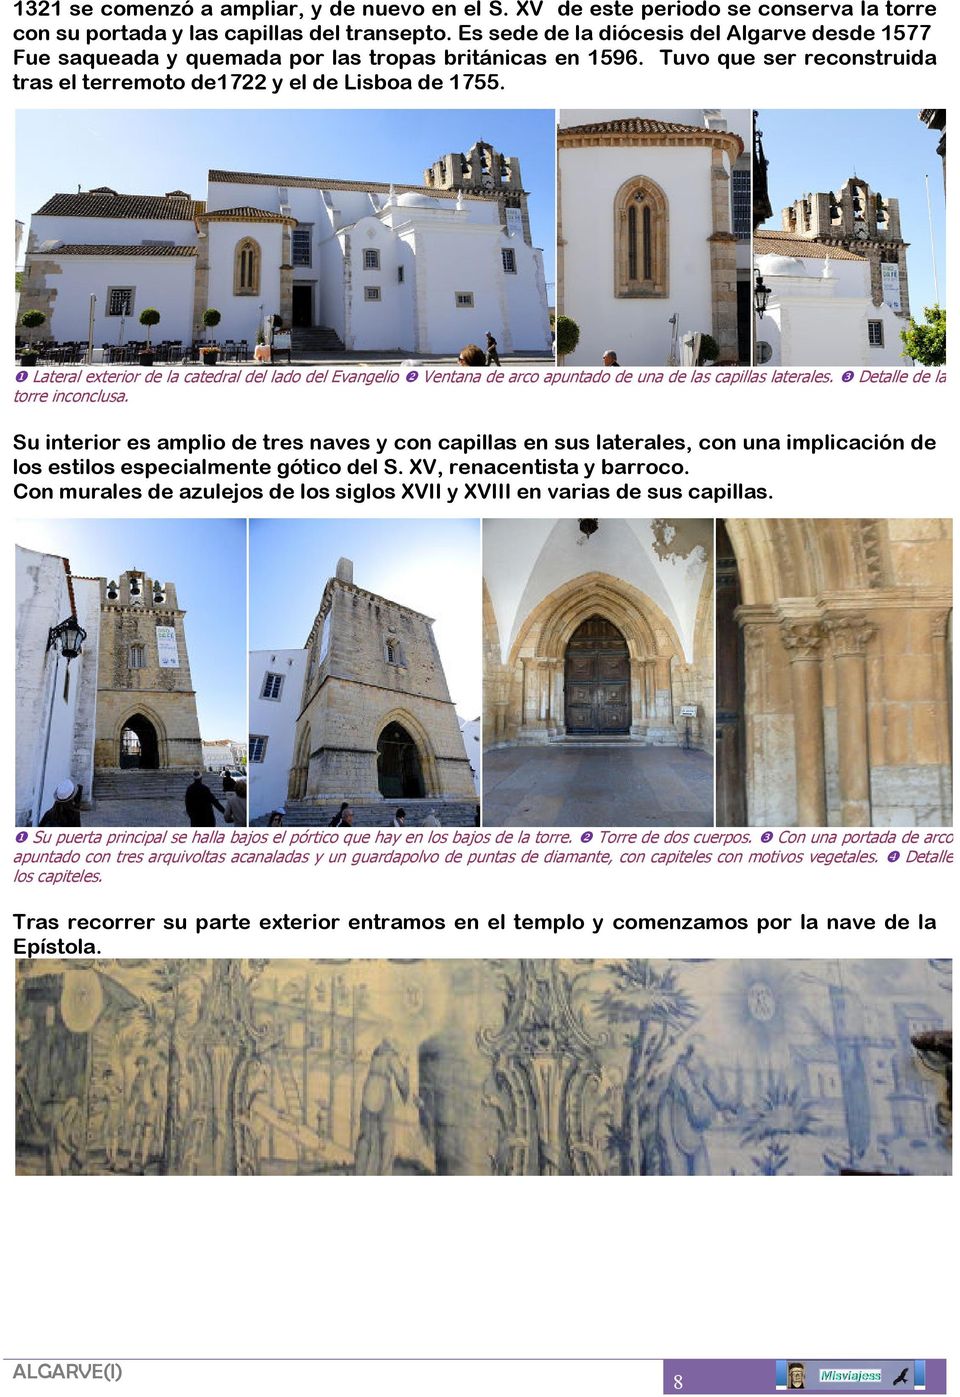 ❶ Lateral exterior de la catedral del lado del Evangelio ❷ Ventana de arco apuntado de una de las capillas laterales. ❸ Detalle de la torre inconclusa.